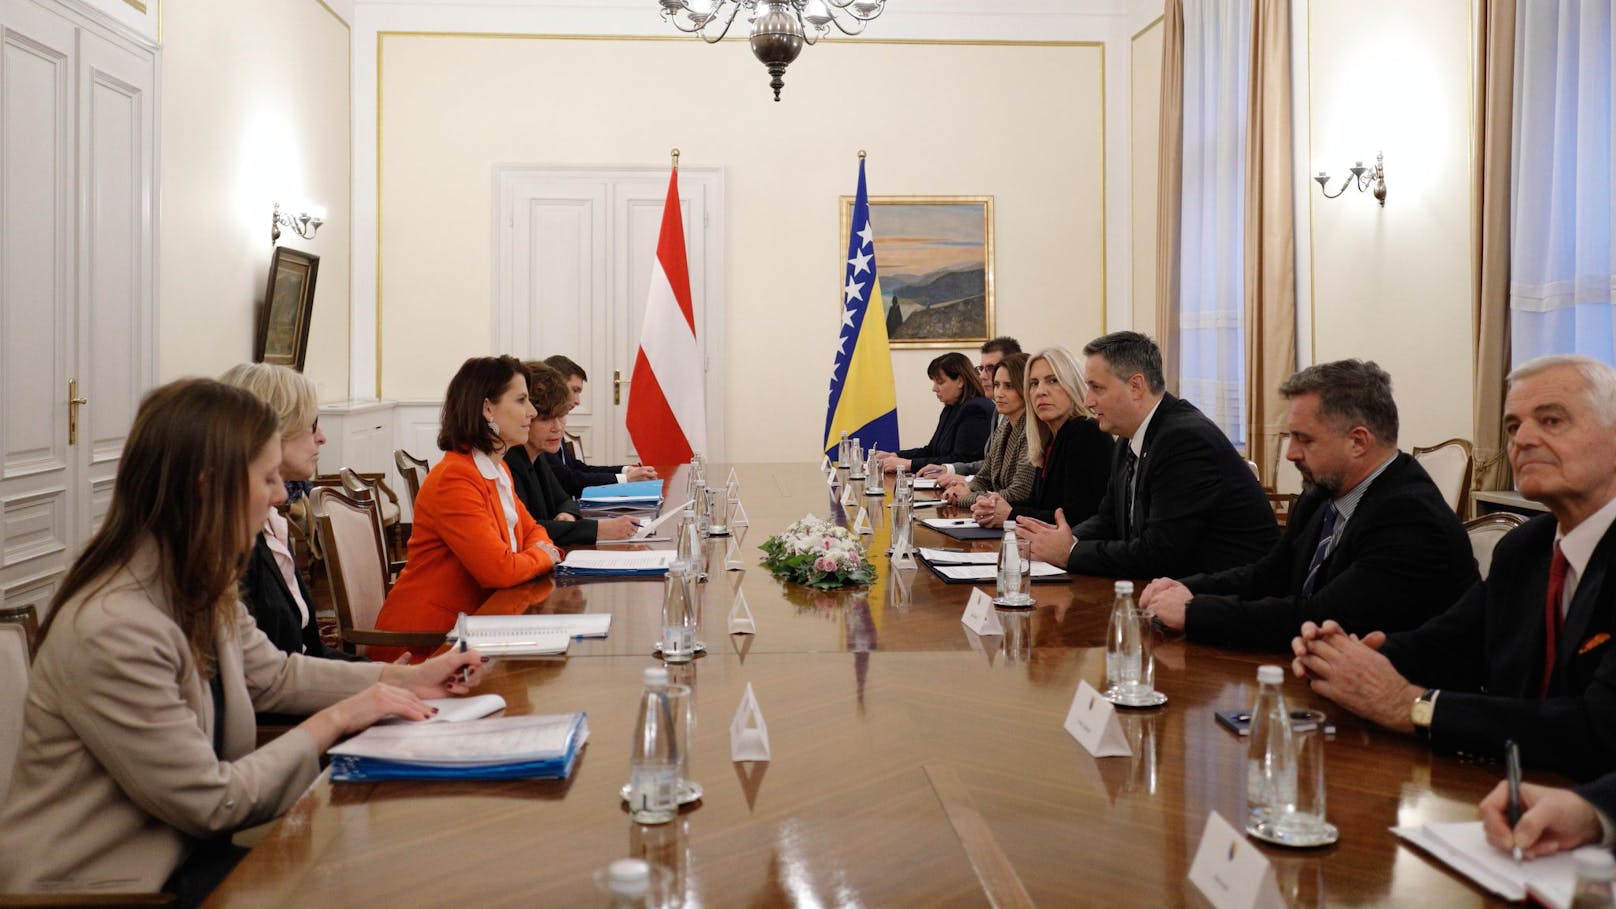 Österreich steht auf der Seite des Westbalkans. Ziel sei es, Bosnien "zu weiteren Reformen zu ermutigen".